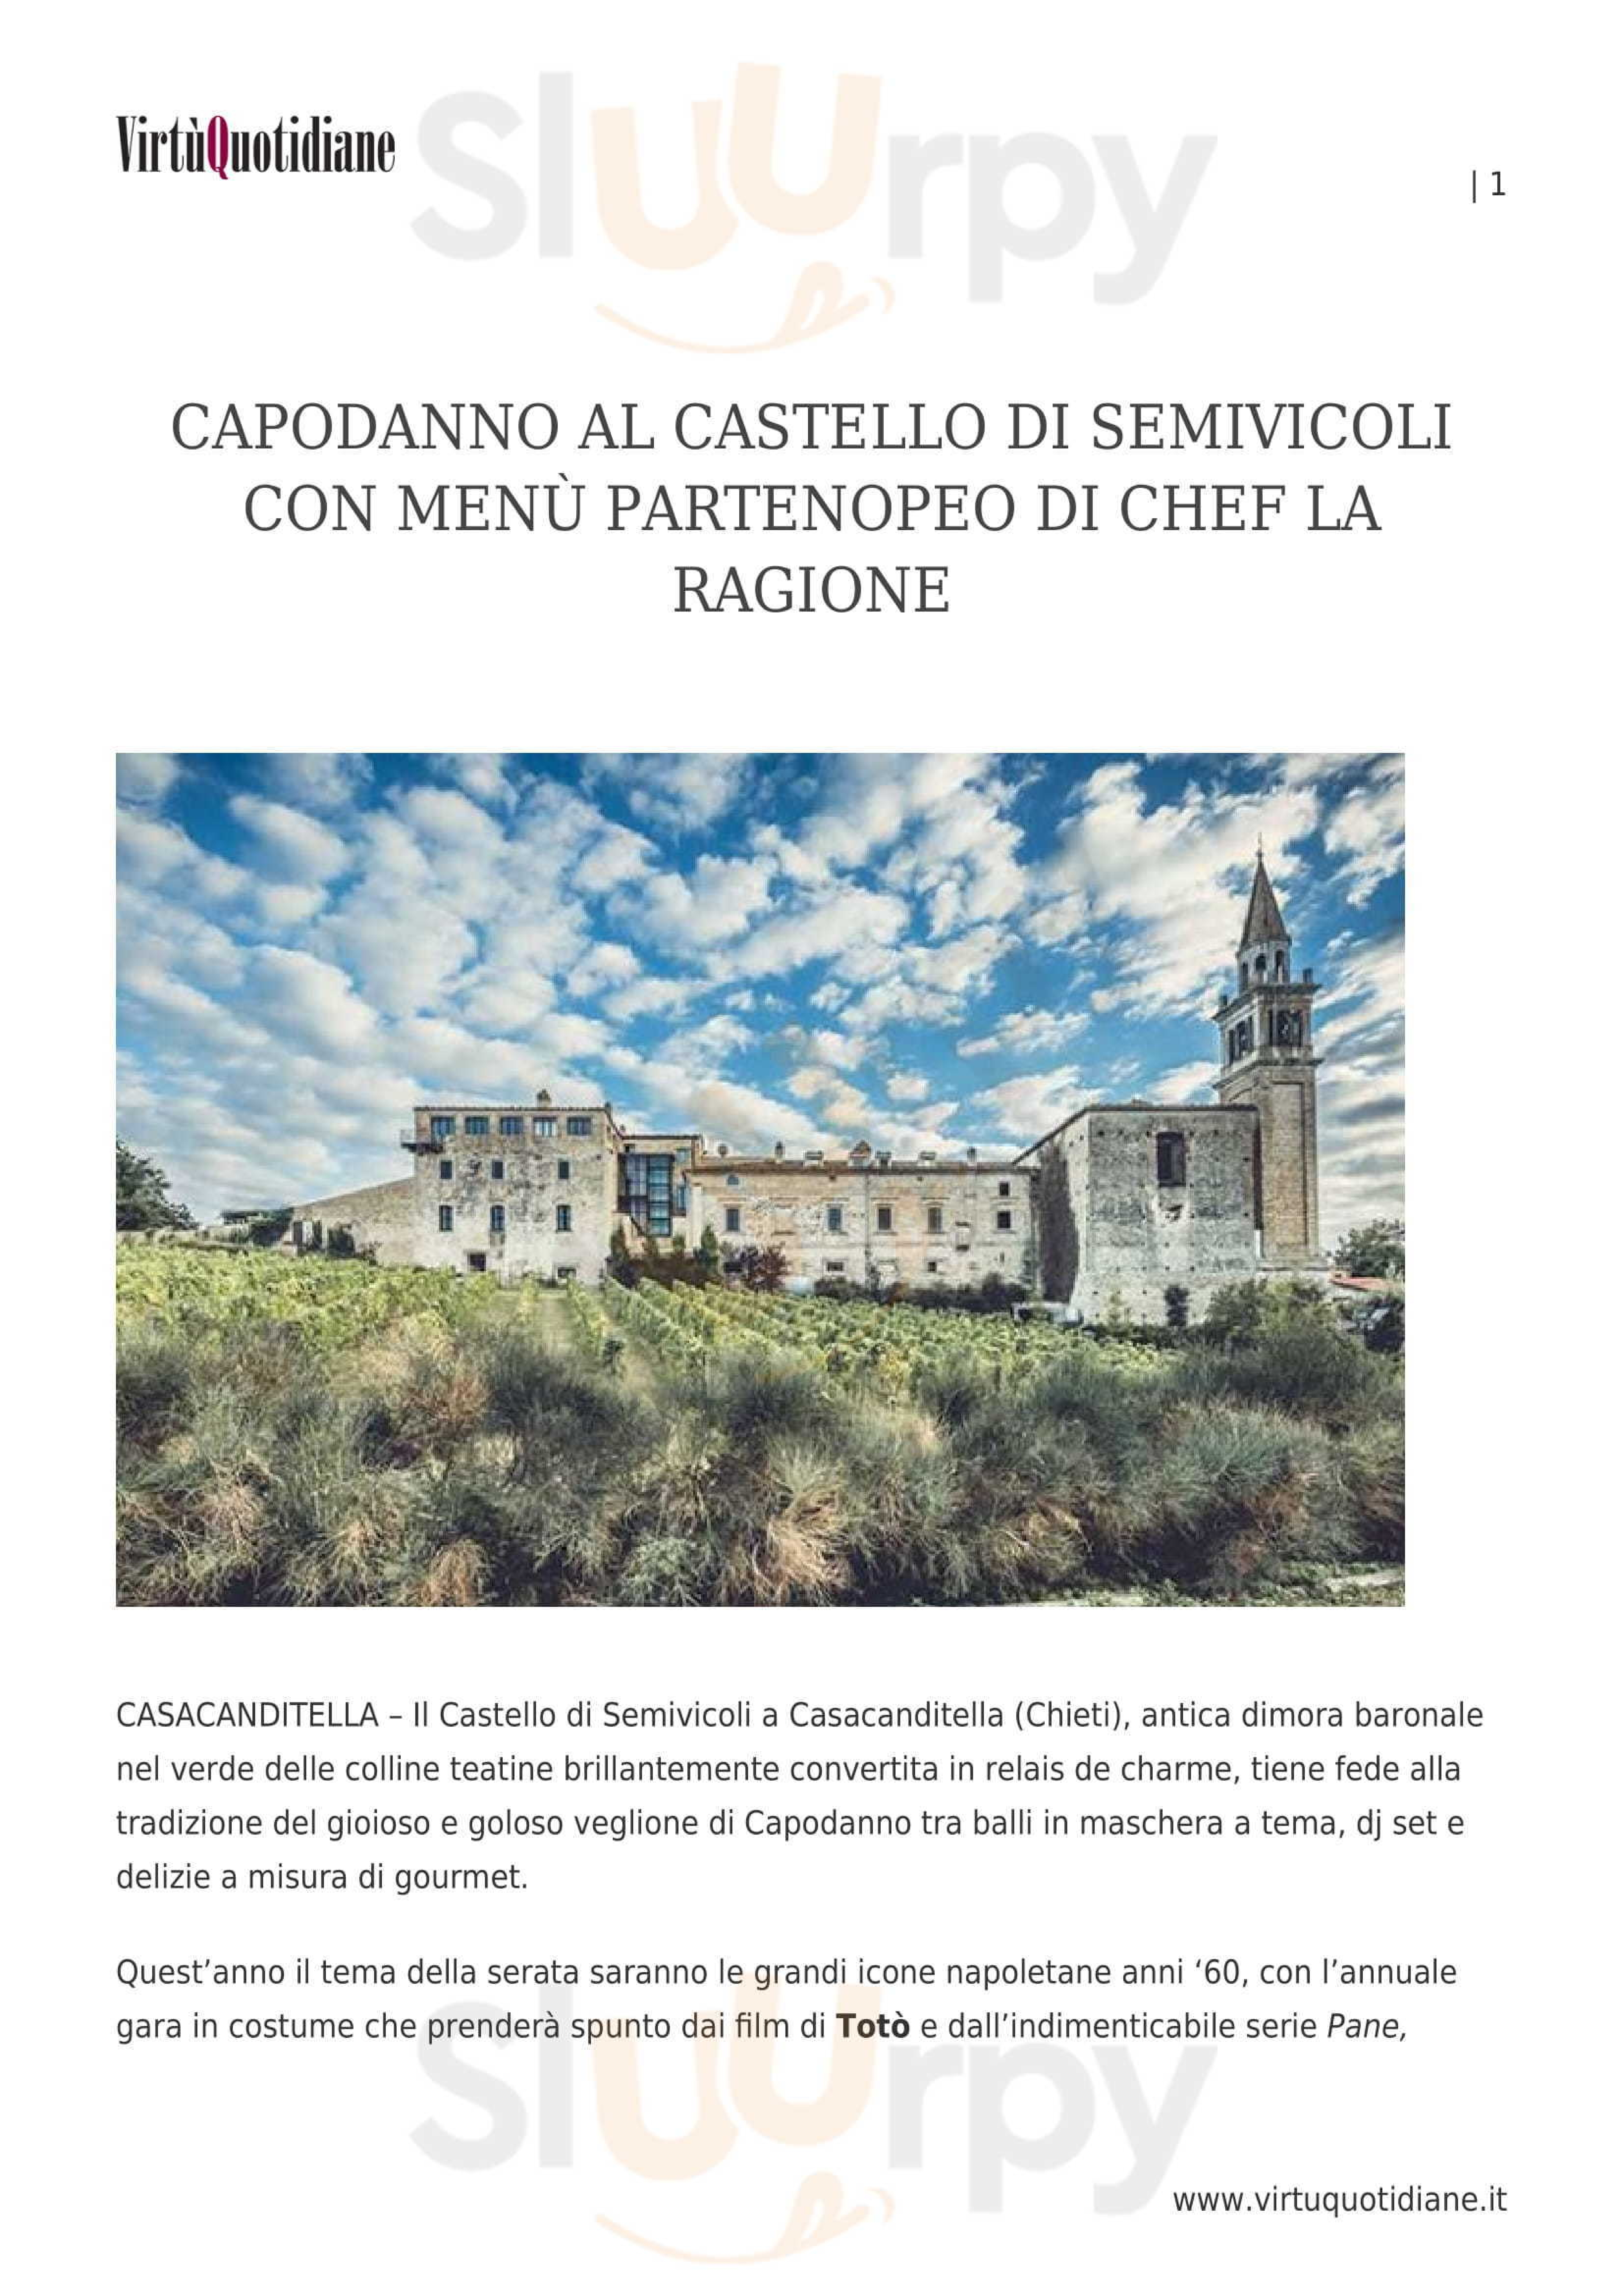 Castello di Semivicoli Casacanditella menù 1 pagina